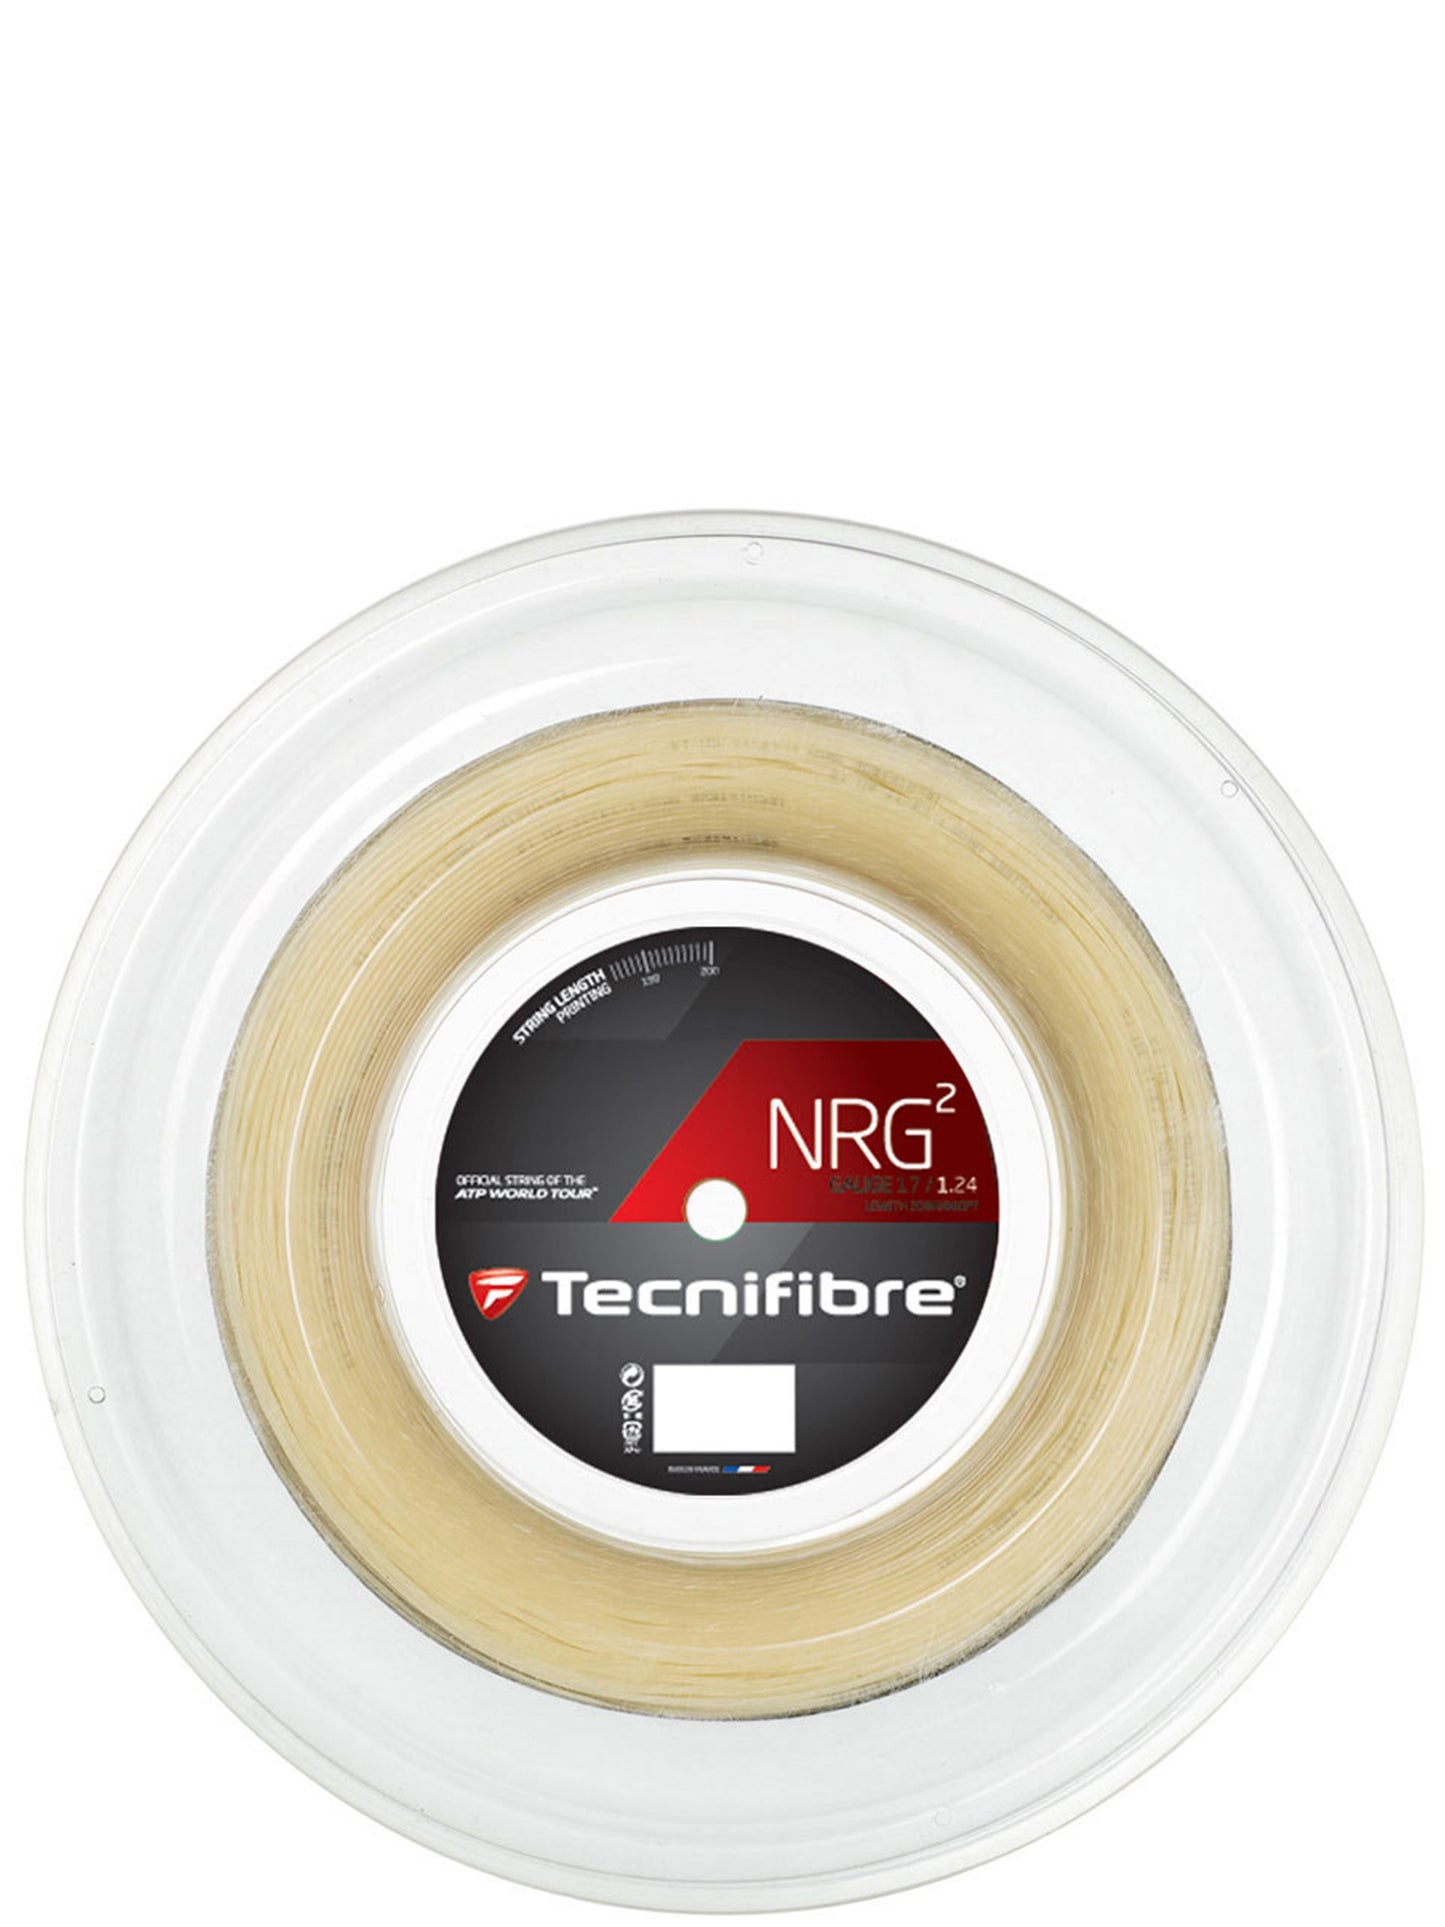 Tecnifibre roulette NRG2 124/17 Naturel (200M)